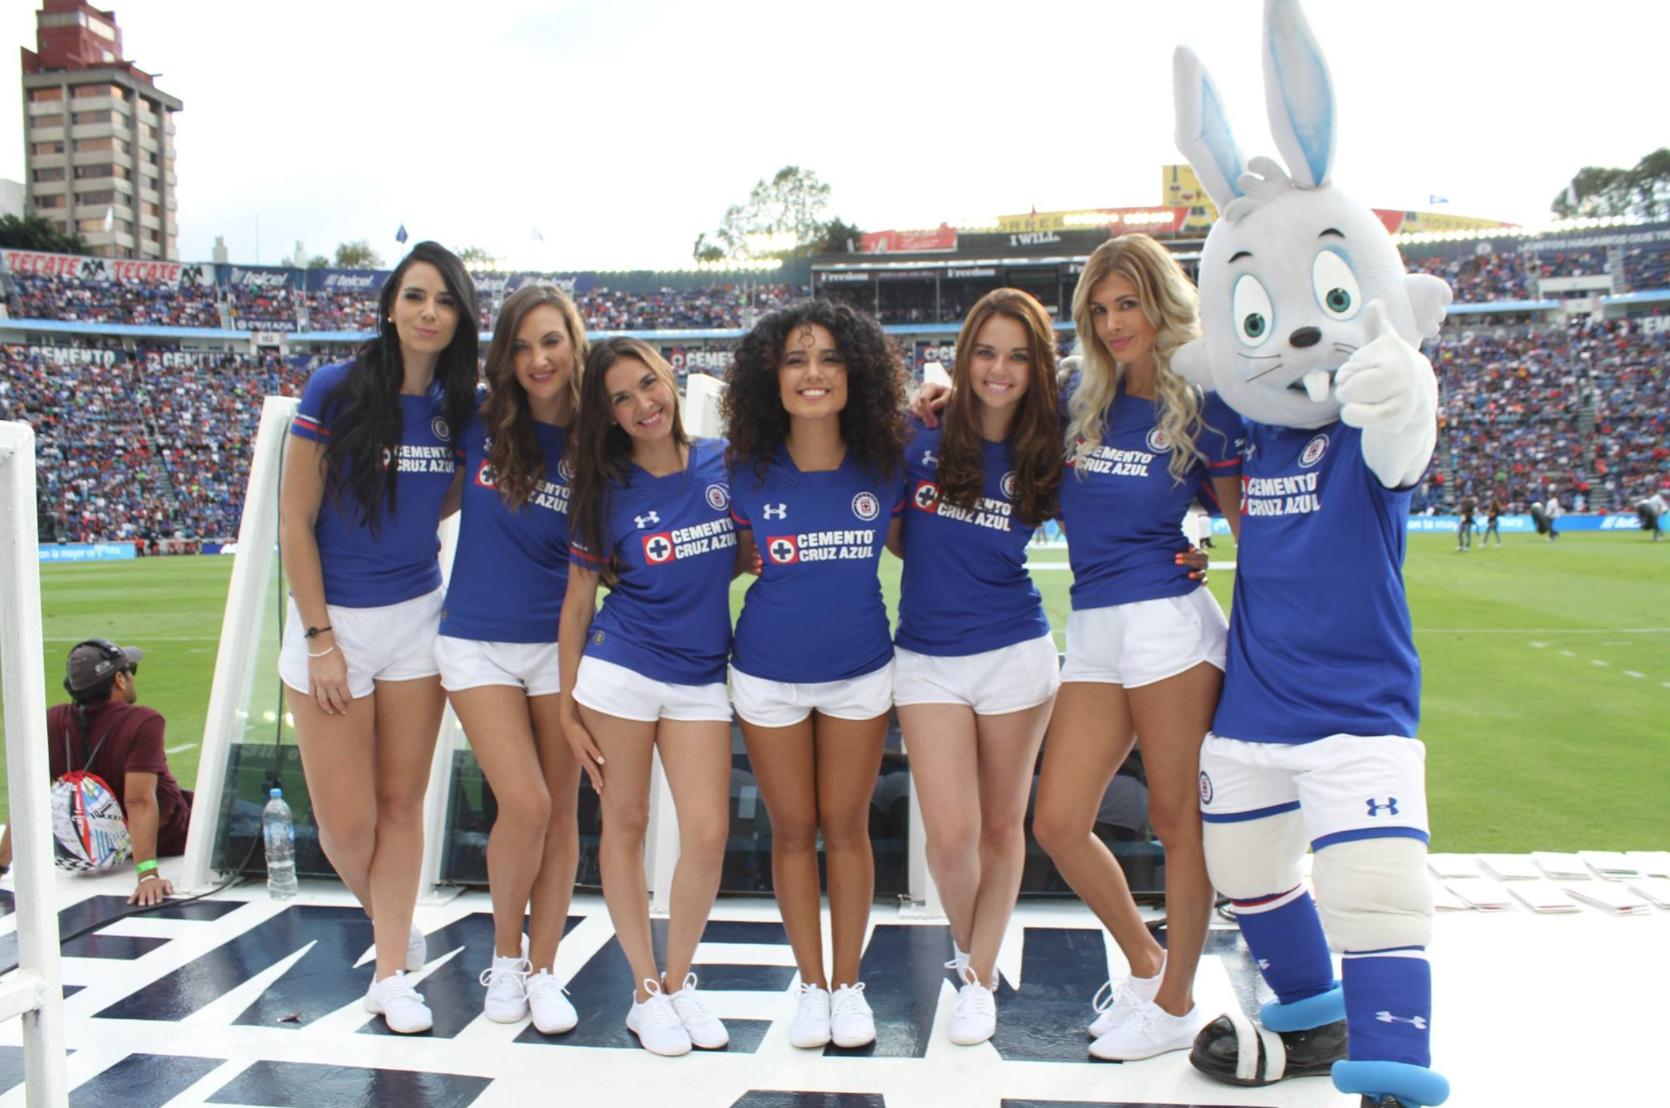 Cruz Azul Cheerleaders Las Celestes. 